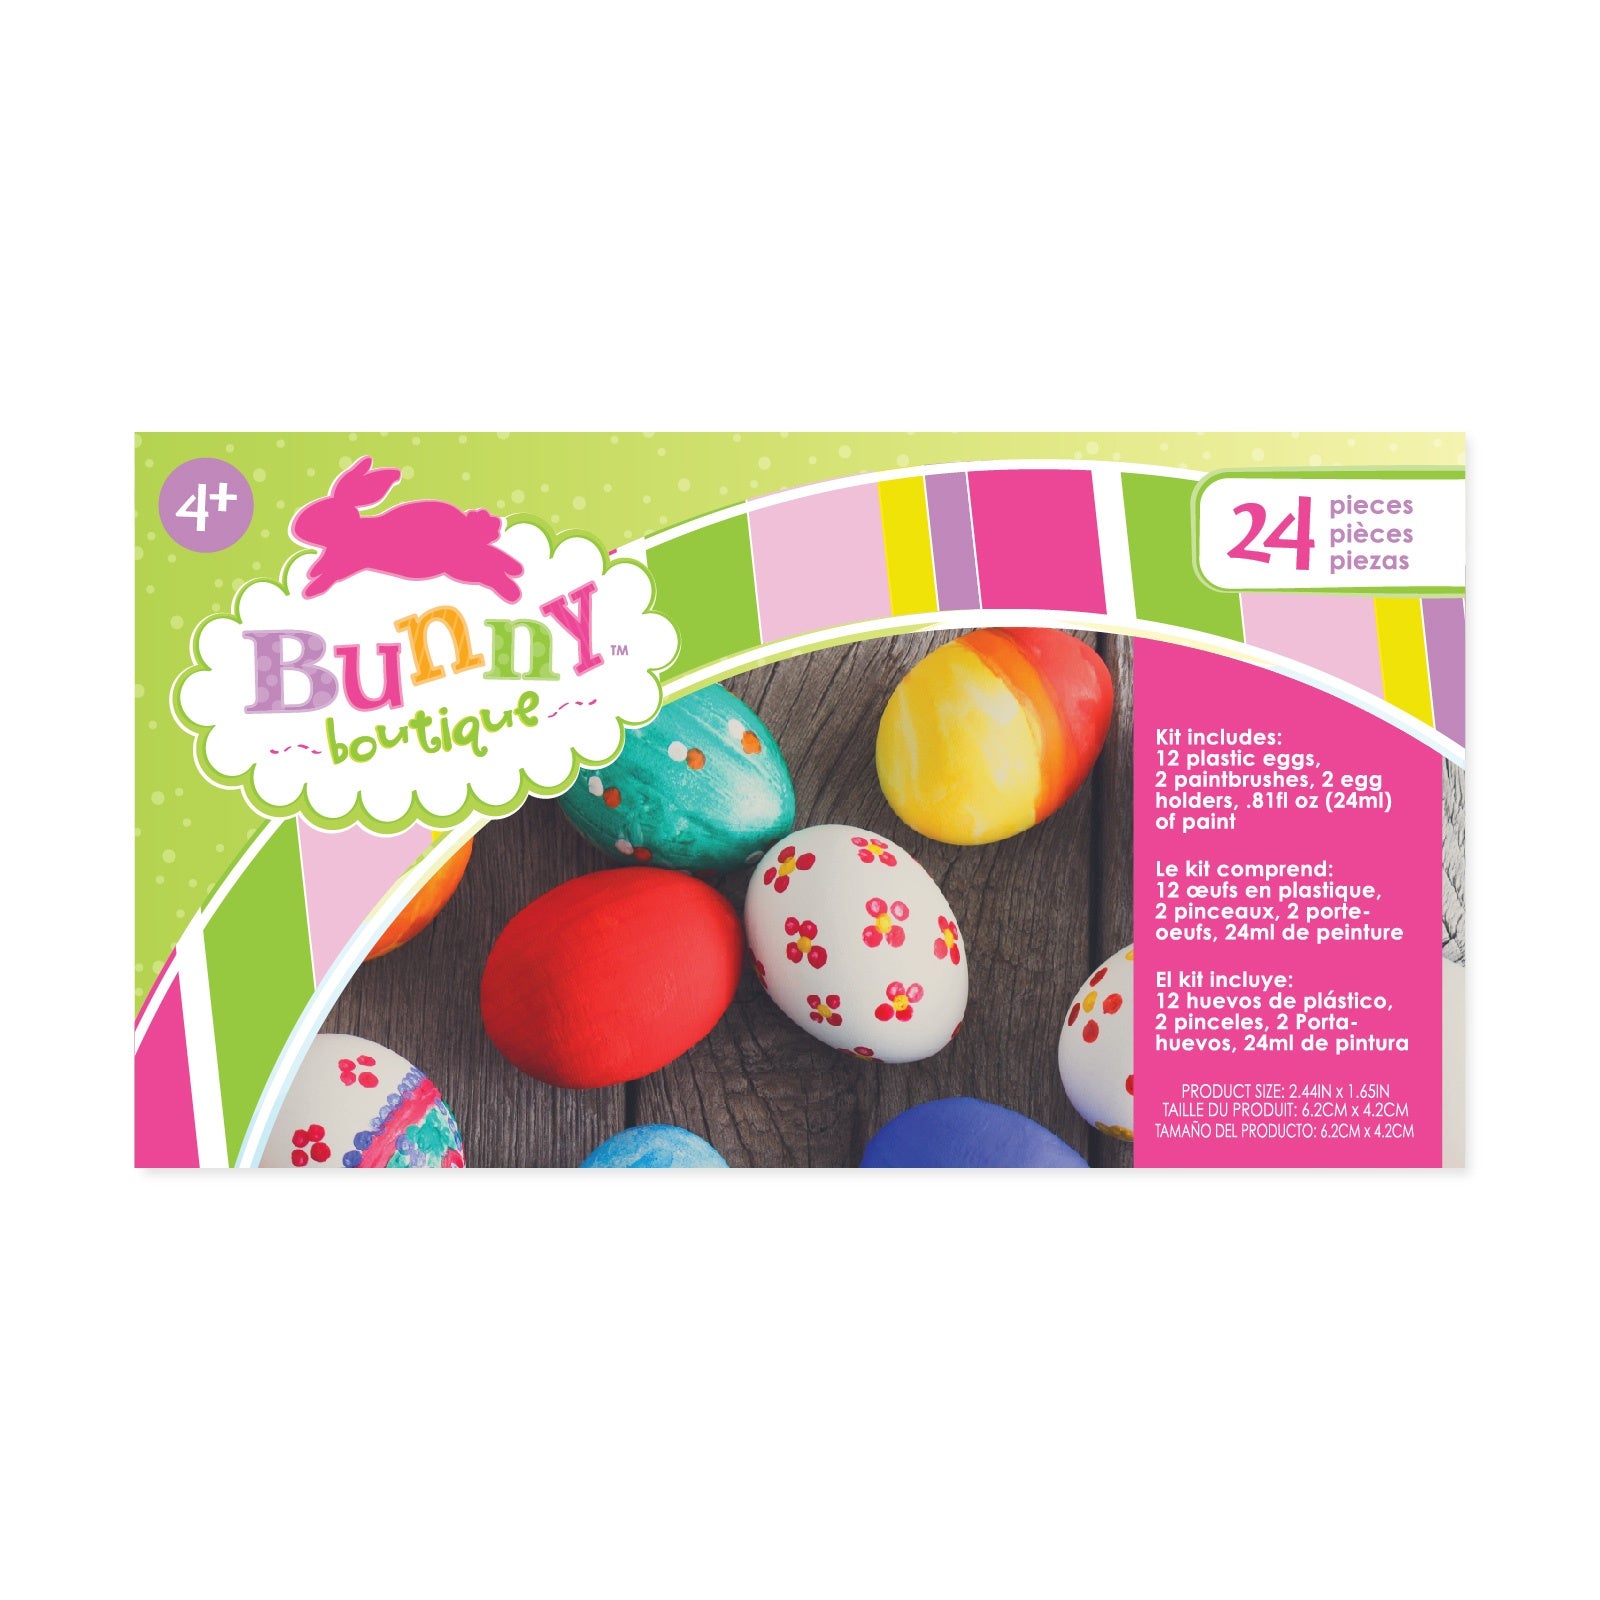 egg coloring kit